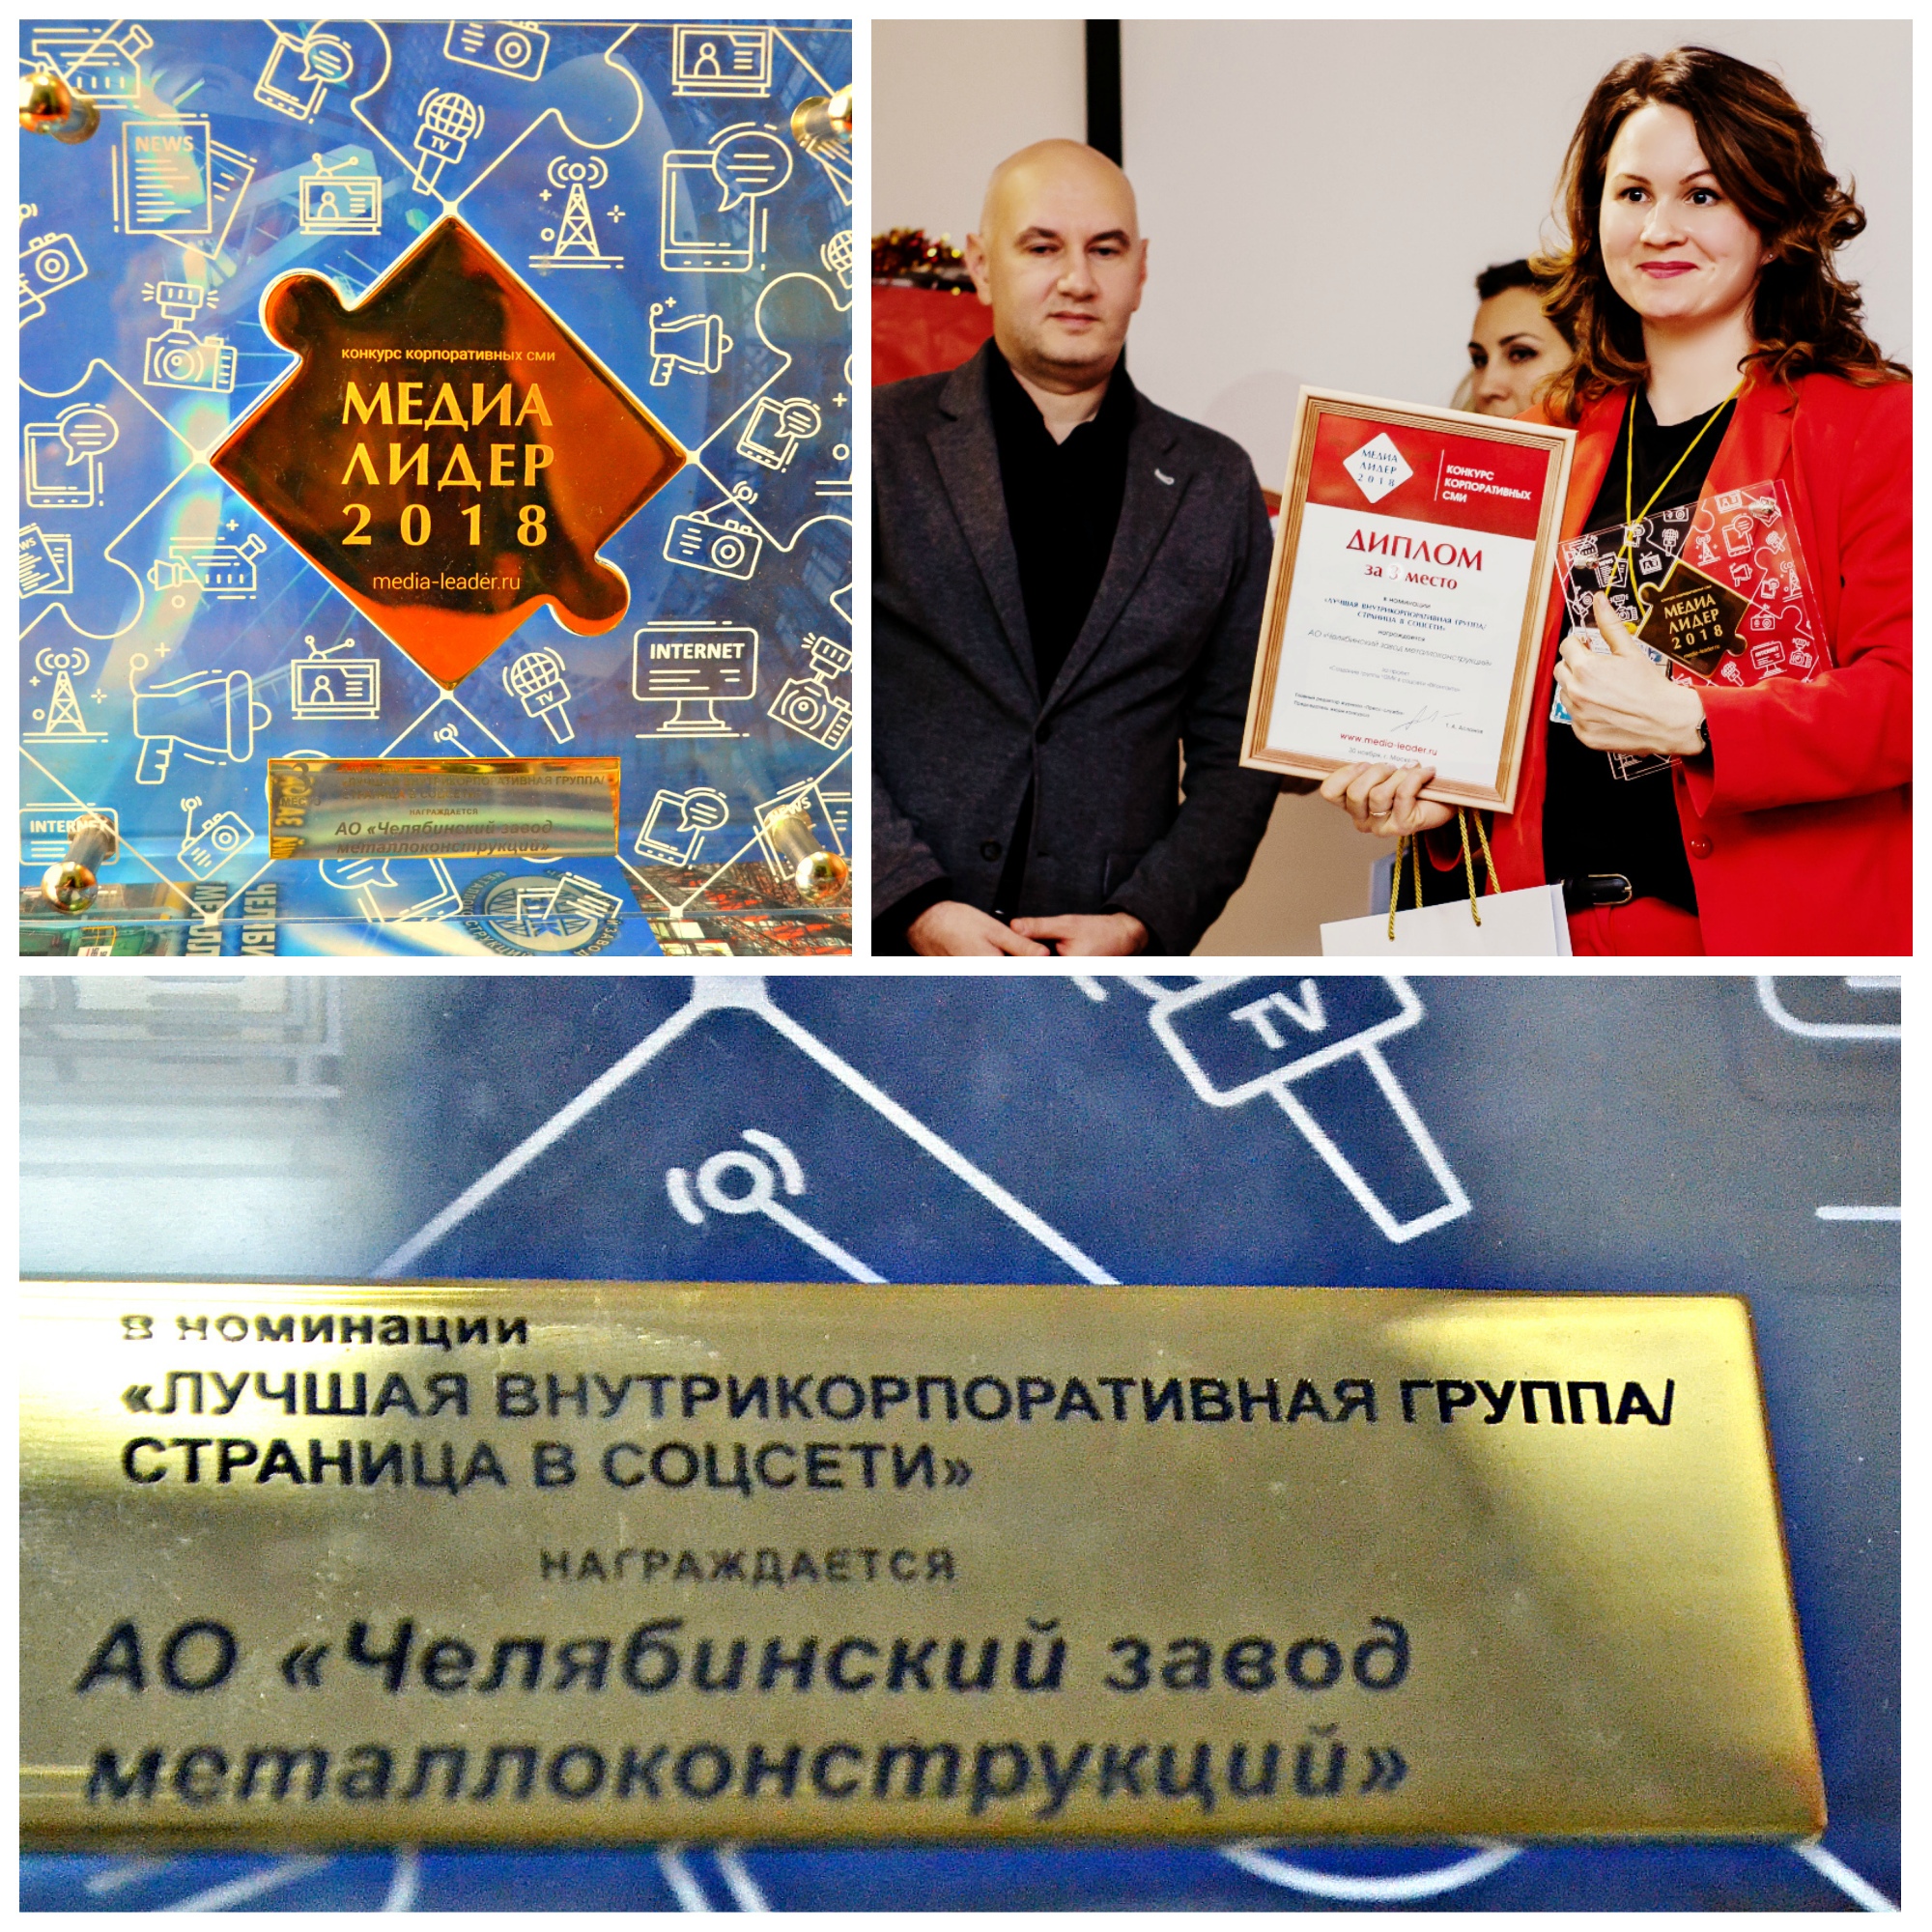 специалист по коммуникациям чзмк анастасия таушканова завоевала приз международного конкурса